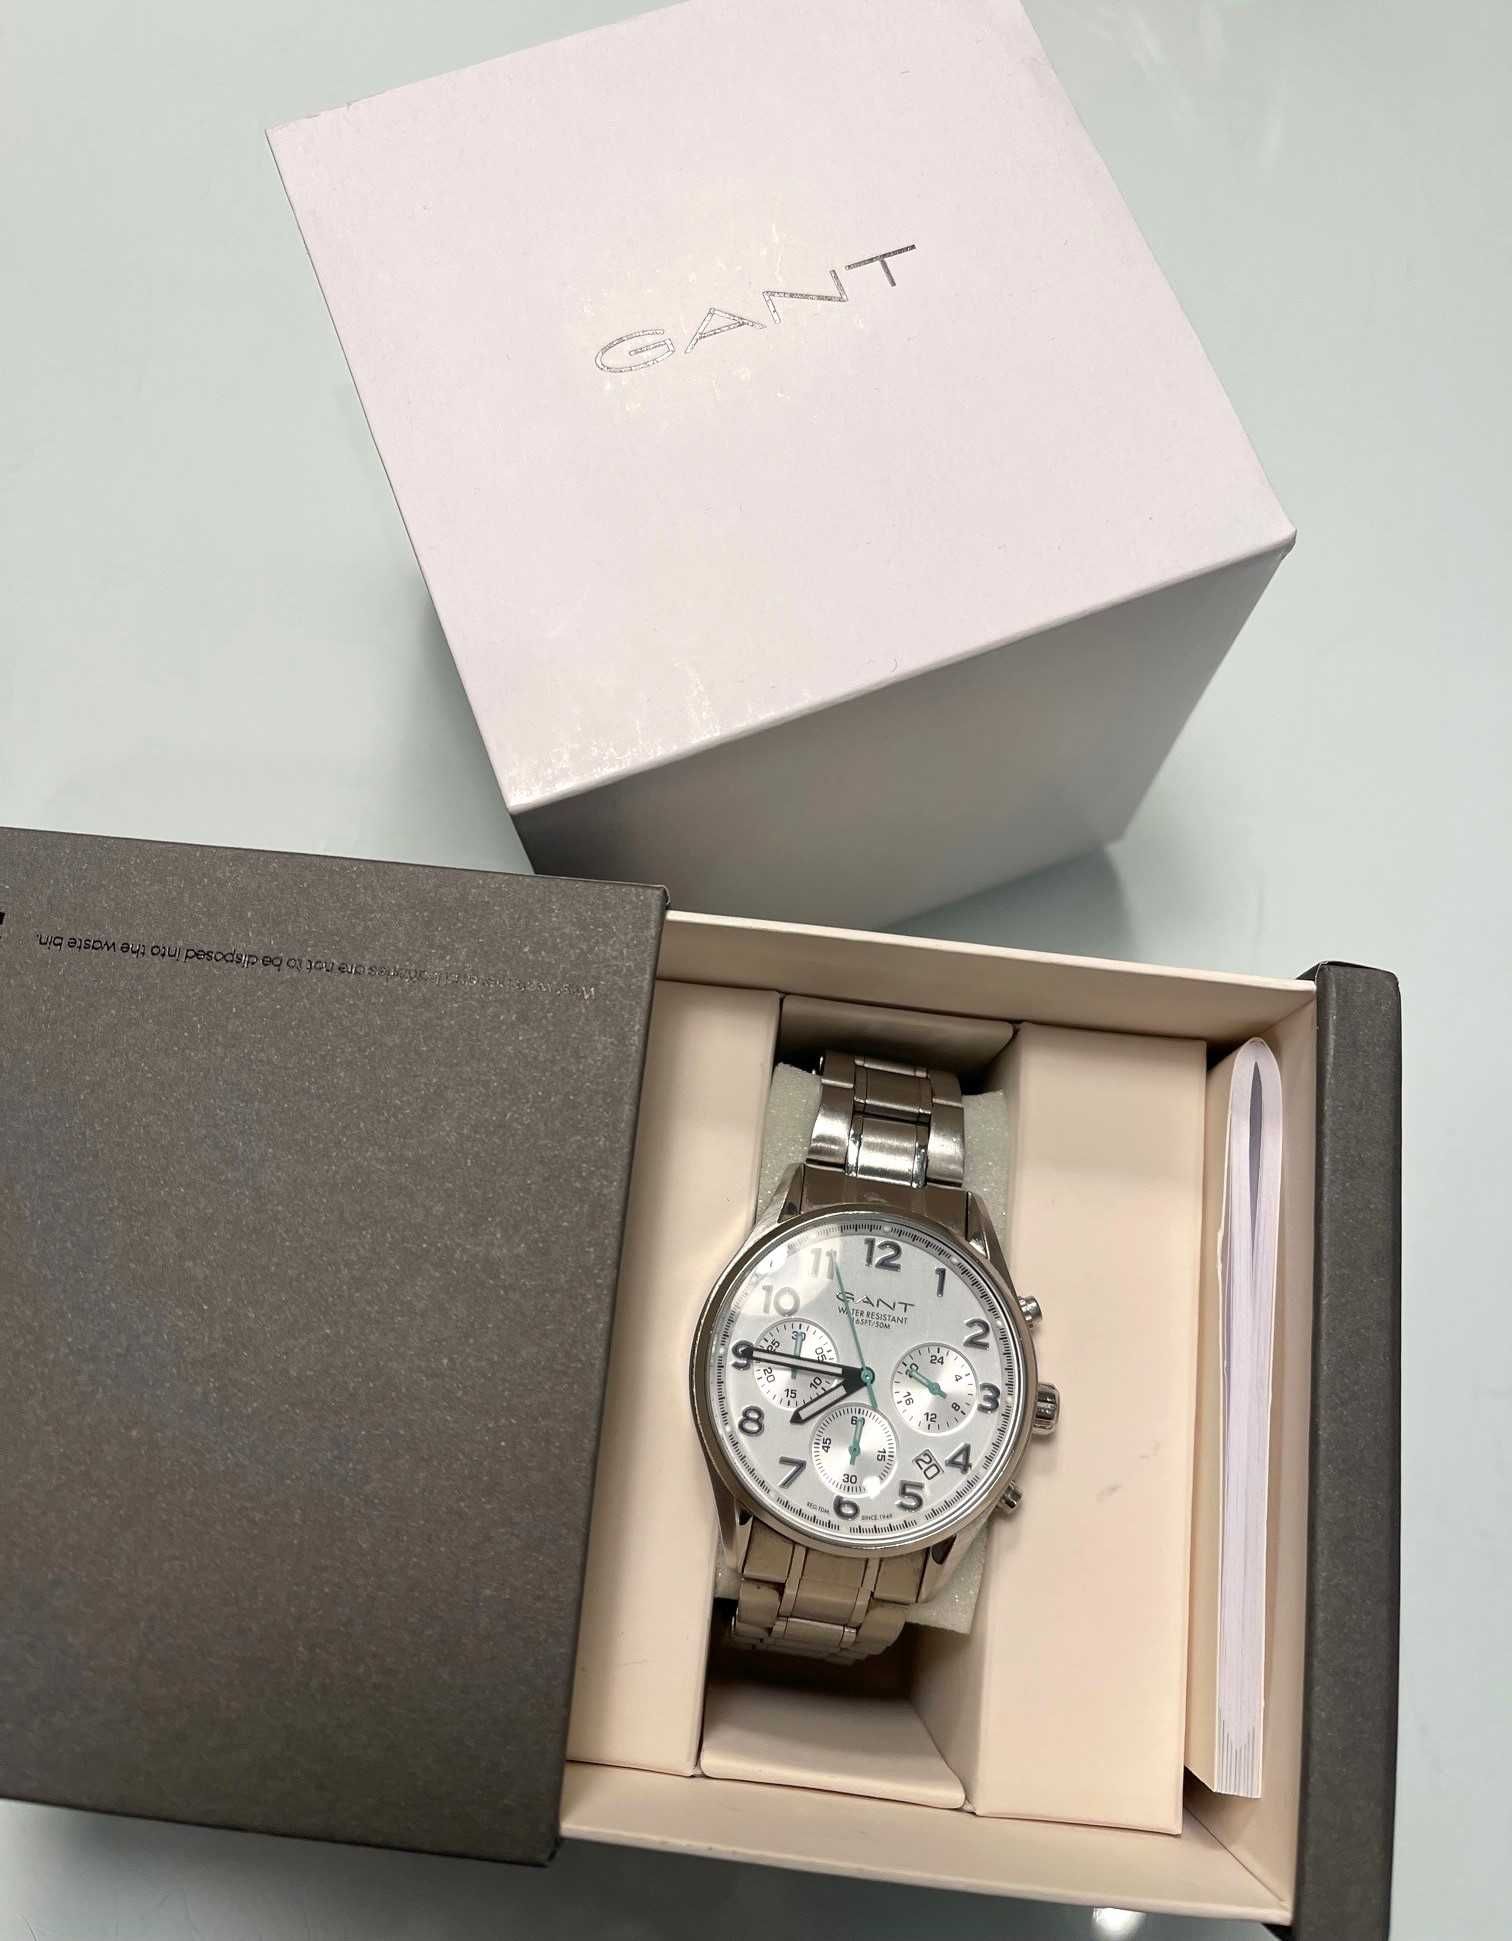 Relógio de senhora Gant original Campolide • OLX Portugal